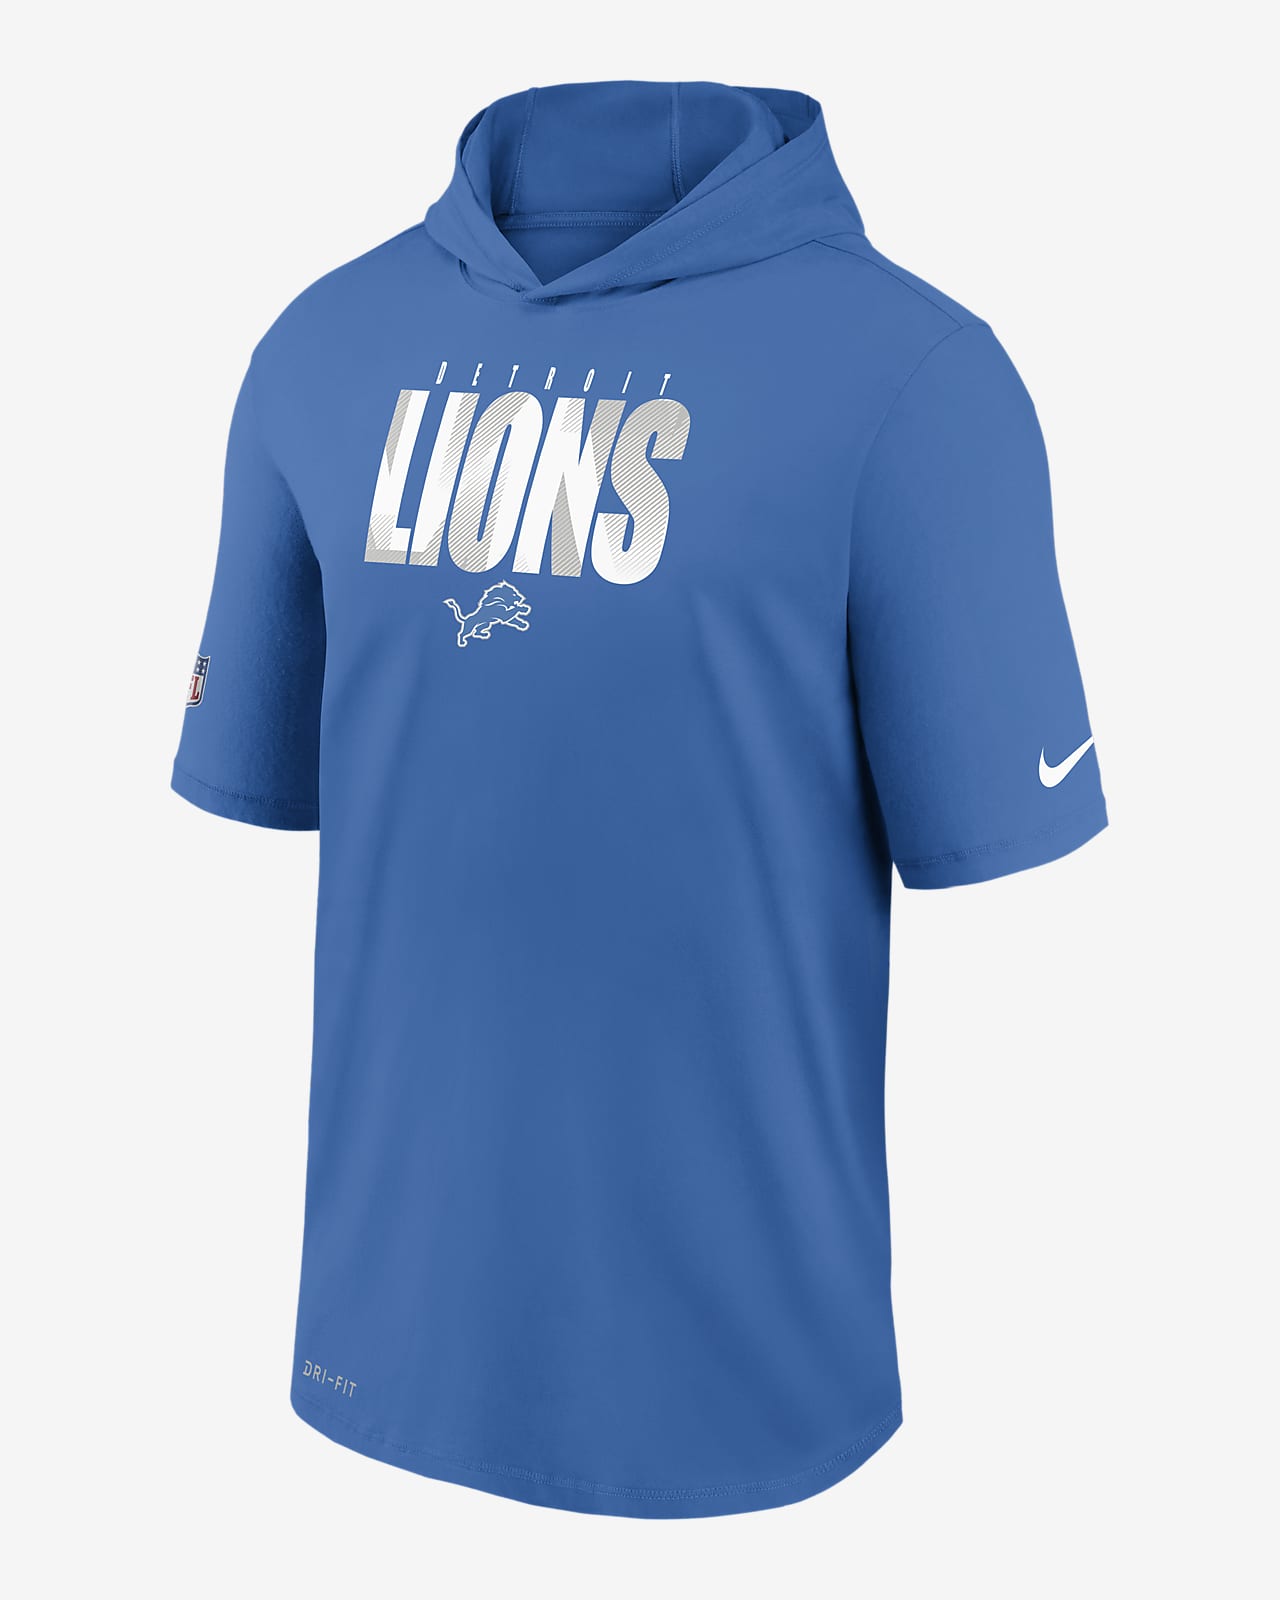 nfl lions hoodie